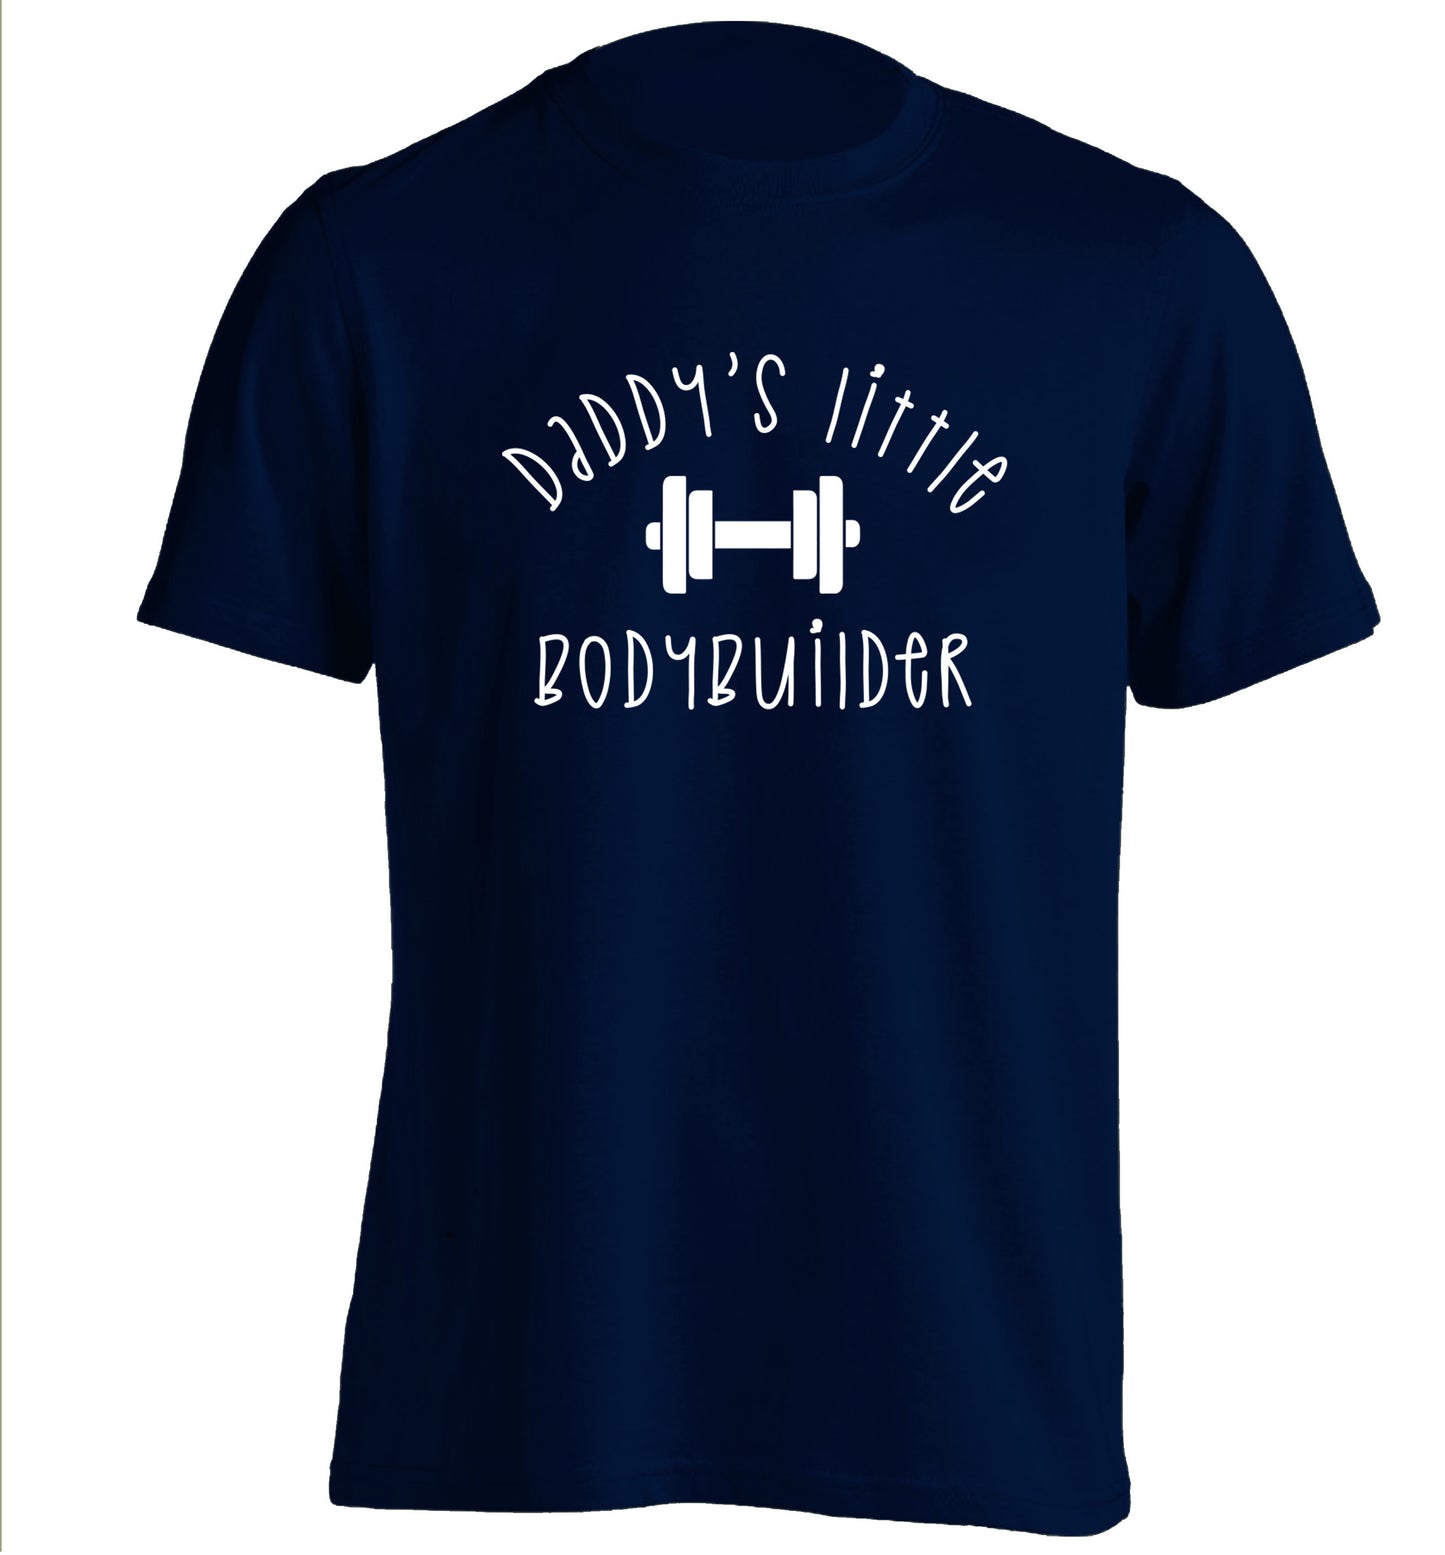 Daddy's little bodybuilder adults unisex navy Tshirt 2XL